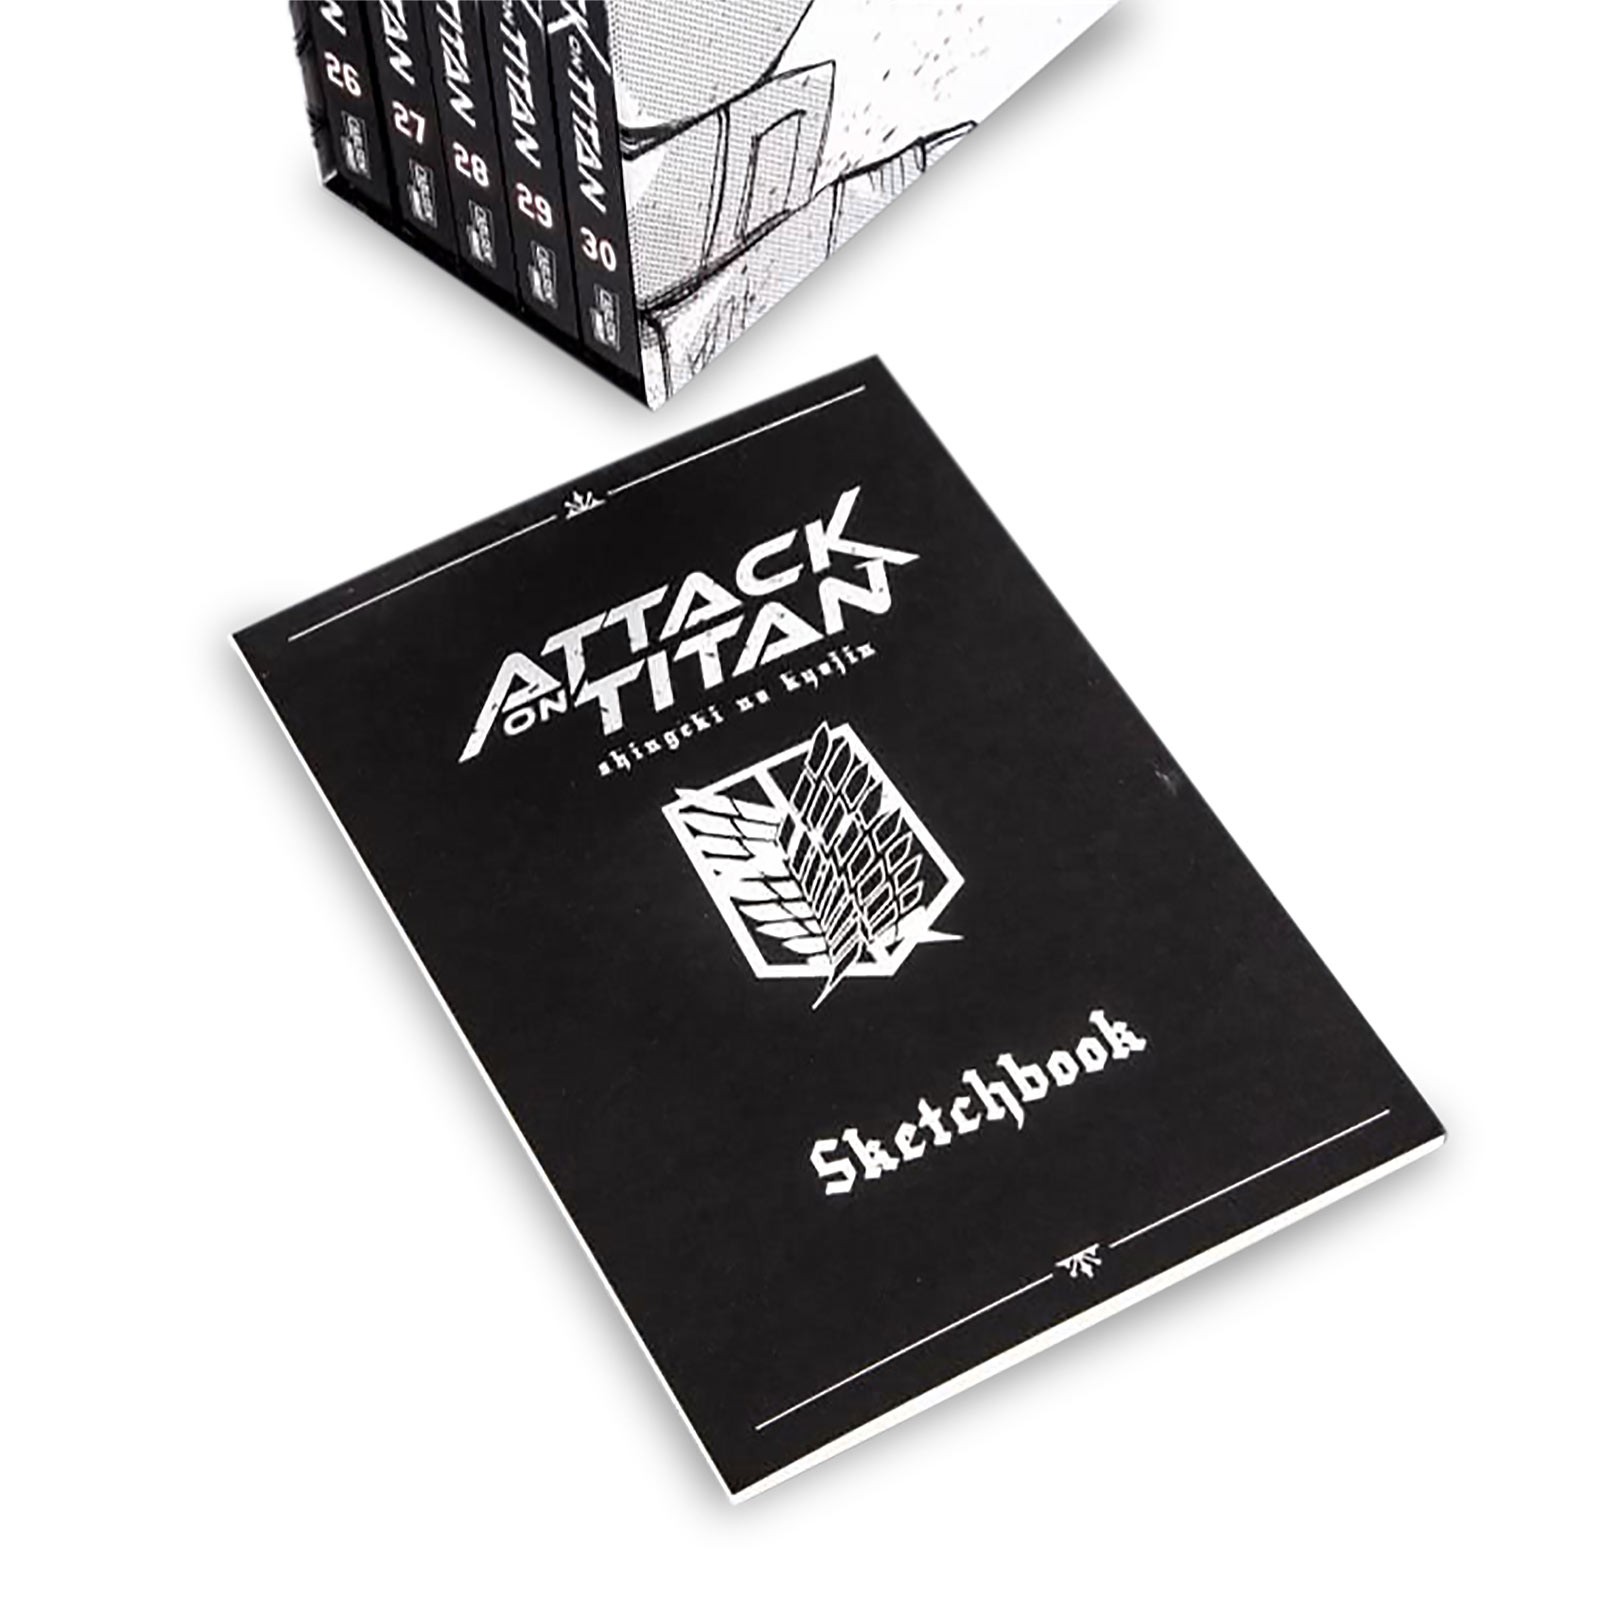 Attack on Titan - Collector's Box Volume 26-30